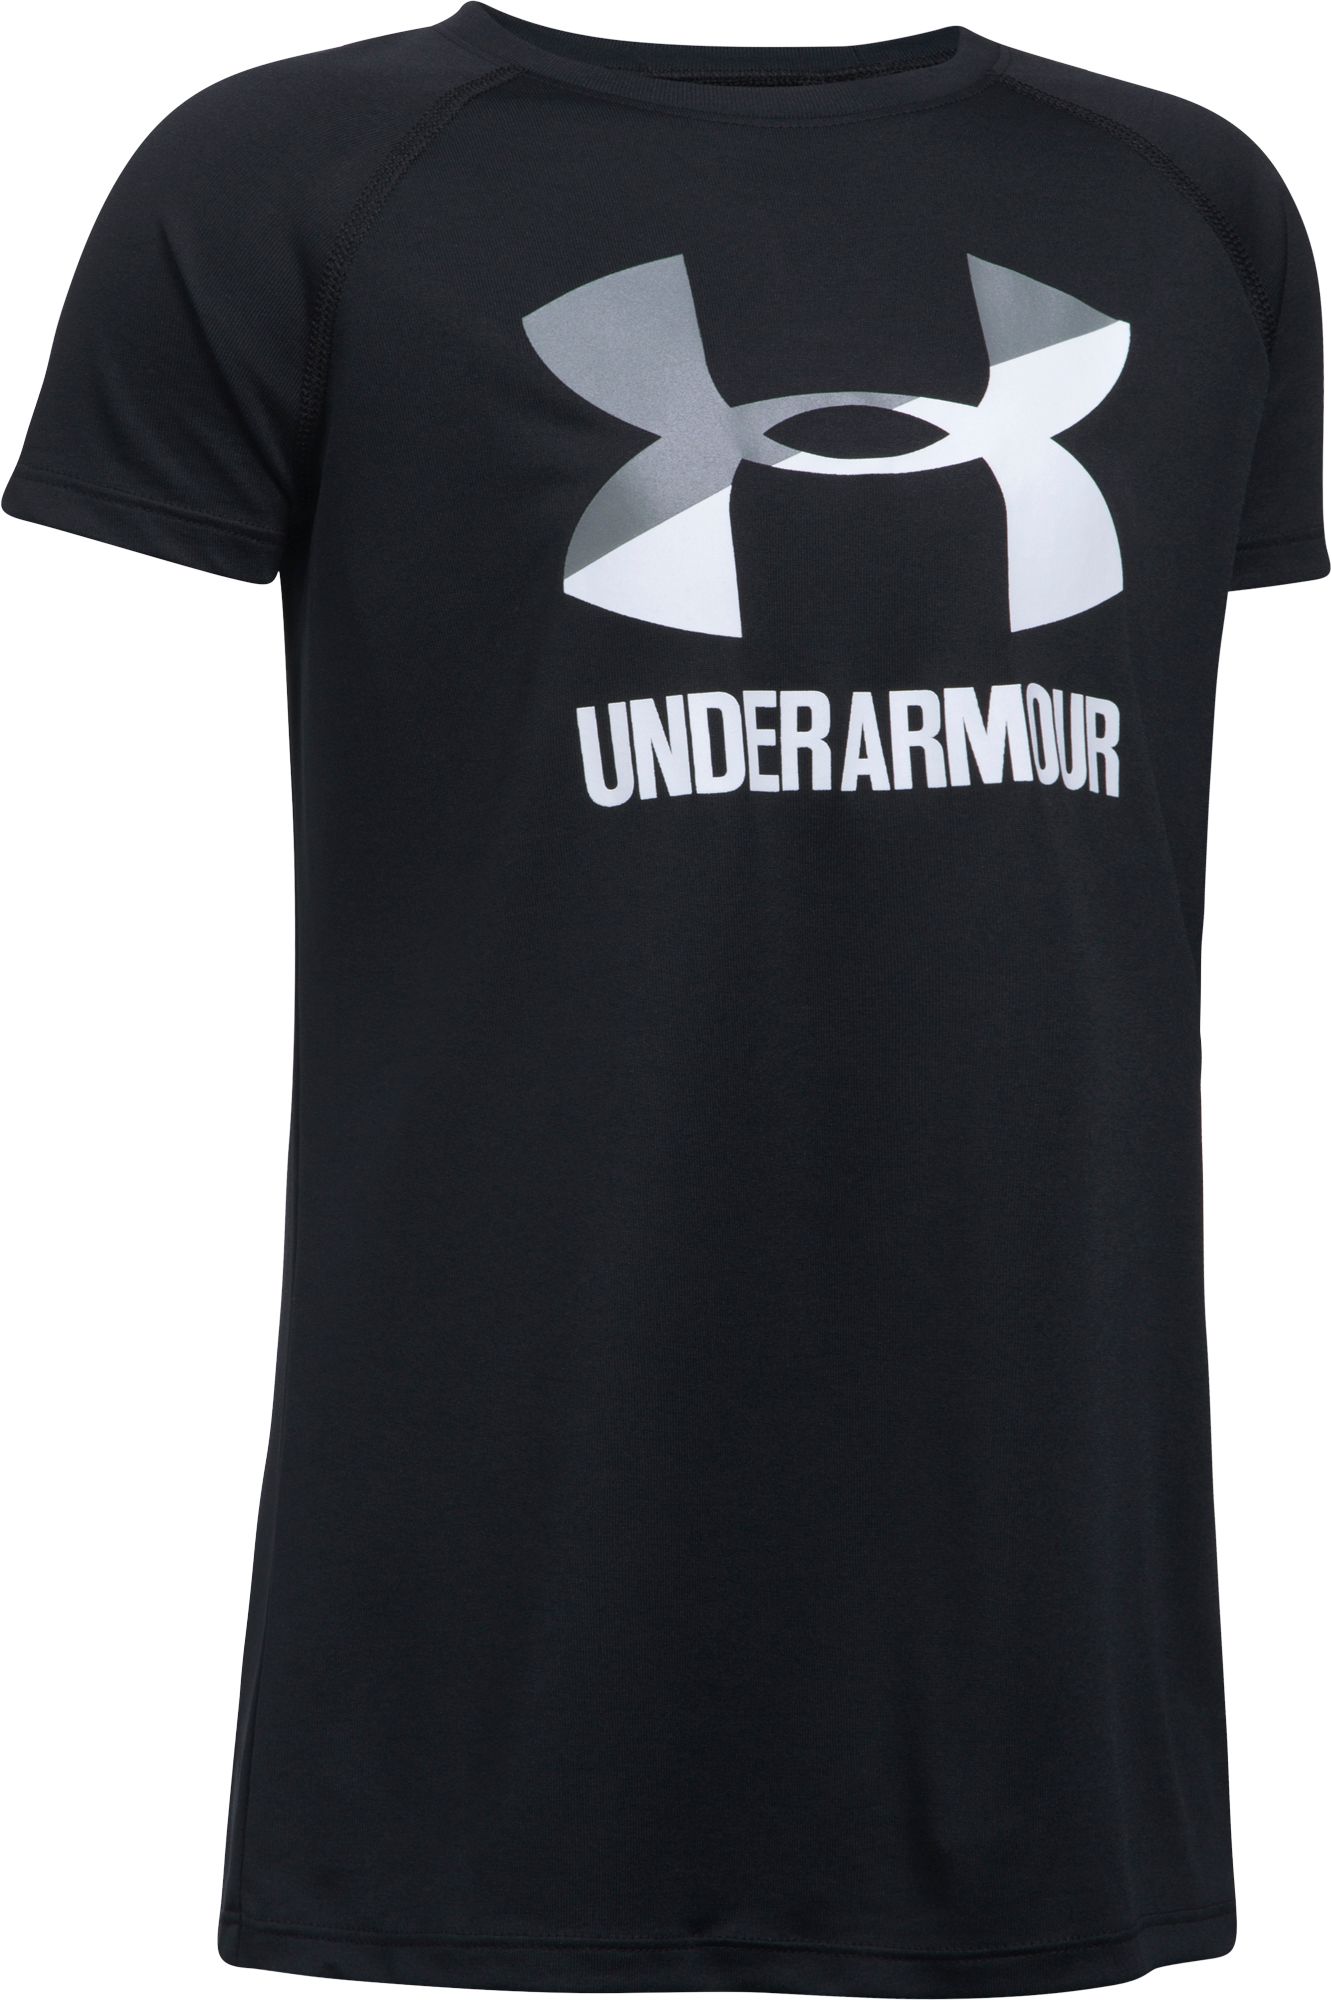 Under Armour Girls' Shirts | Kids Under 